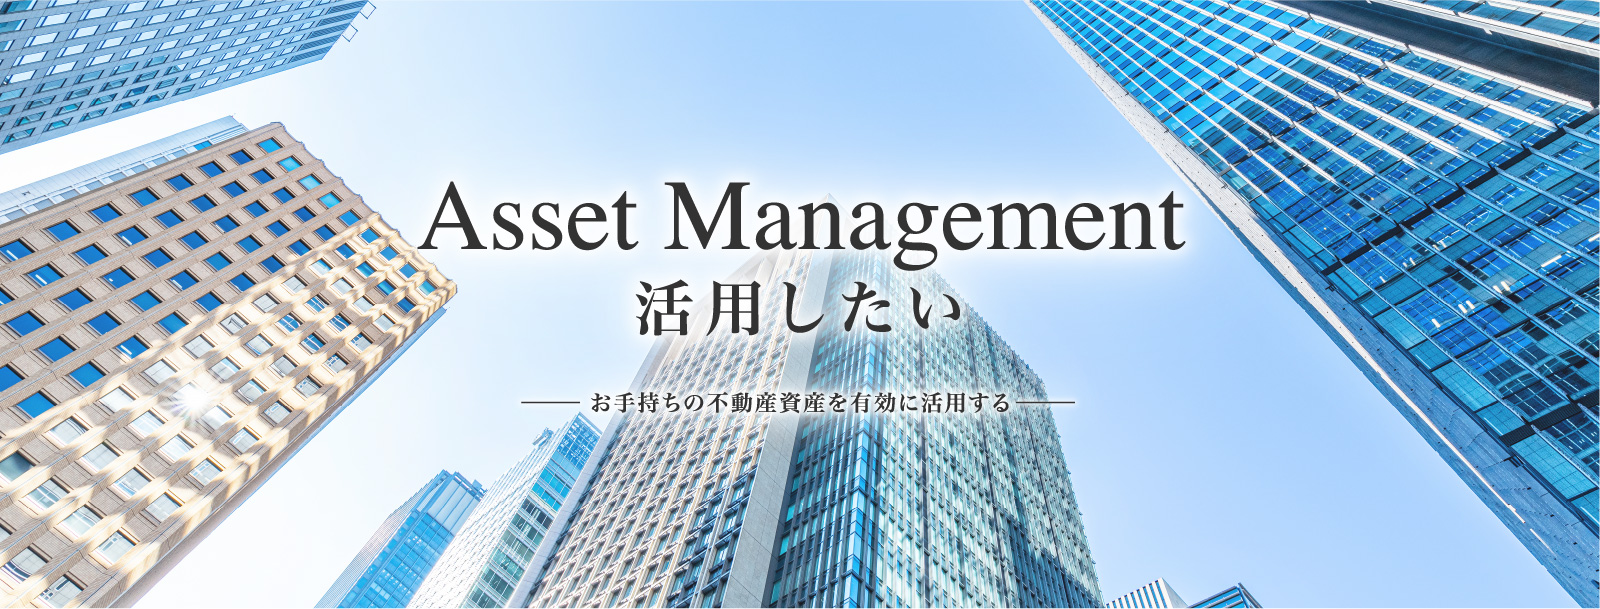 Asset Management 活用したい お手持ちの不動産資産を有効に活用する